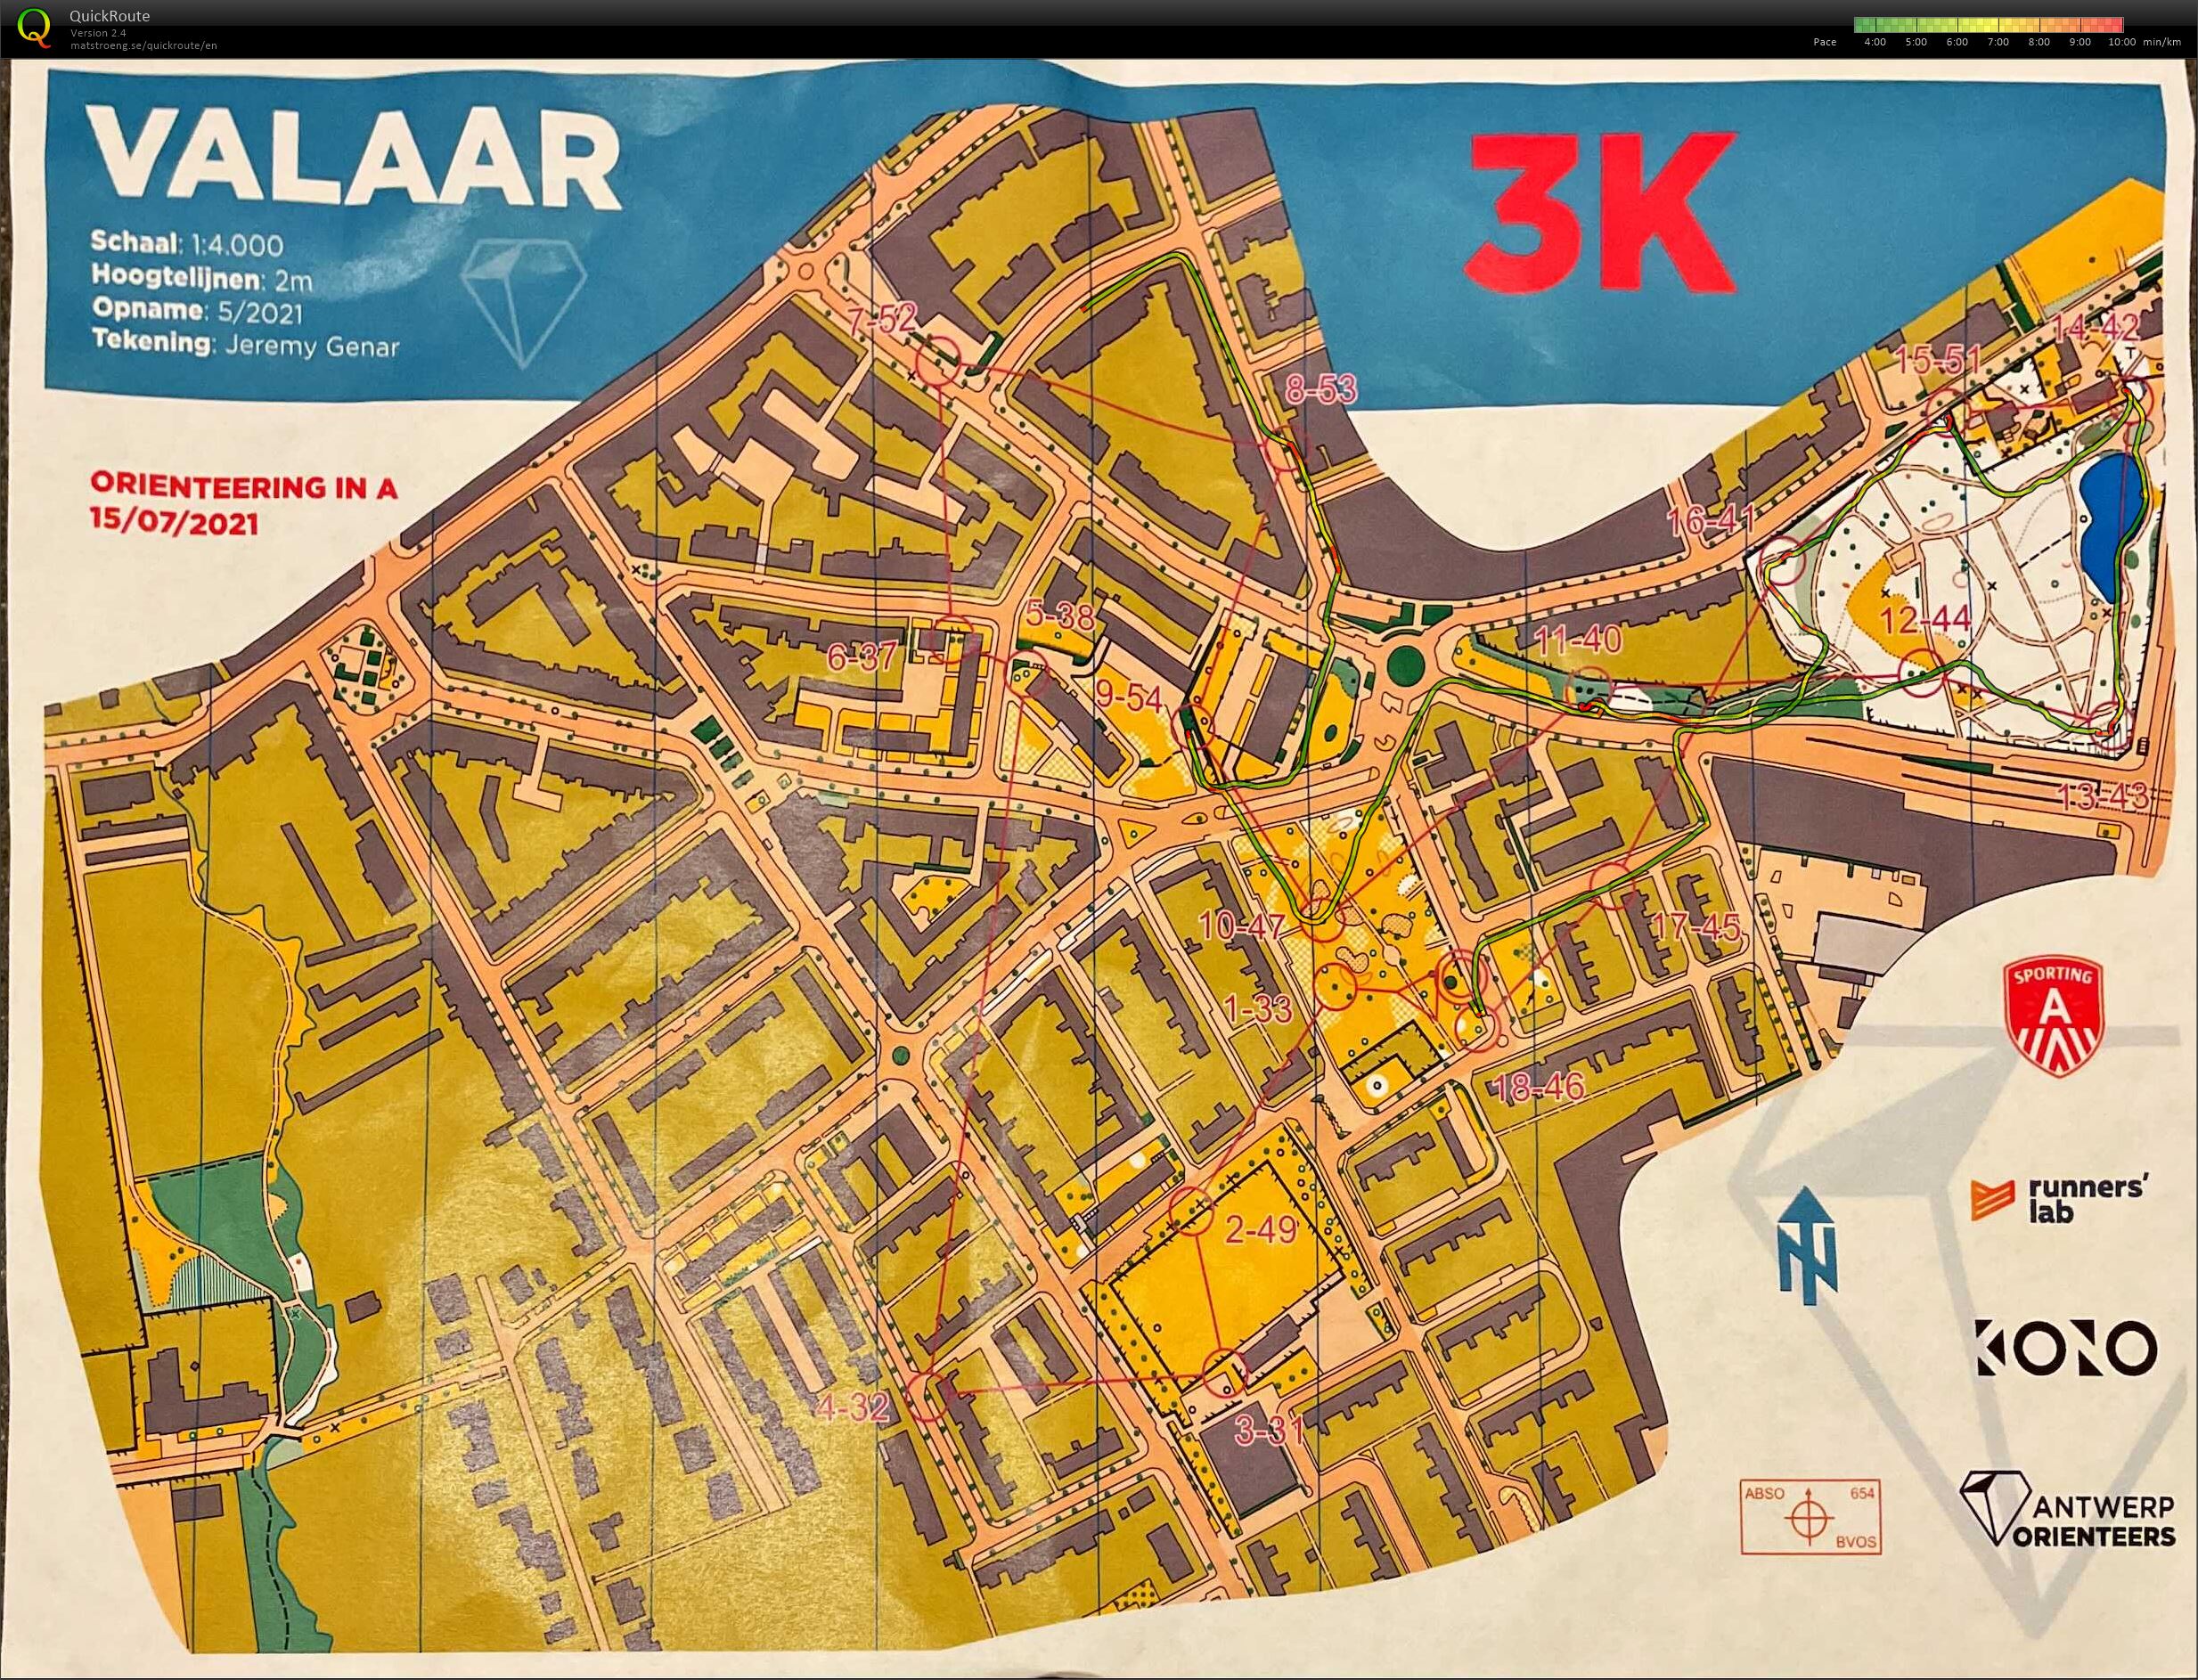 Orienteering in A - Wilrijk Valaar - 3K (15.07.2021)